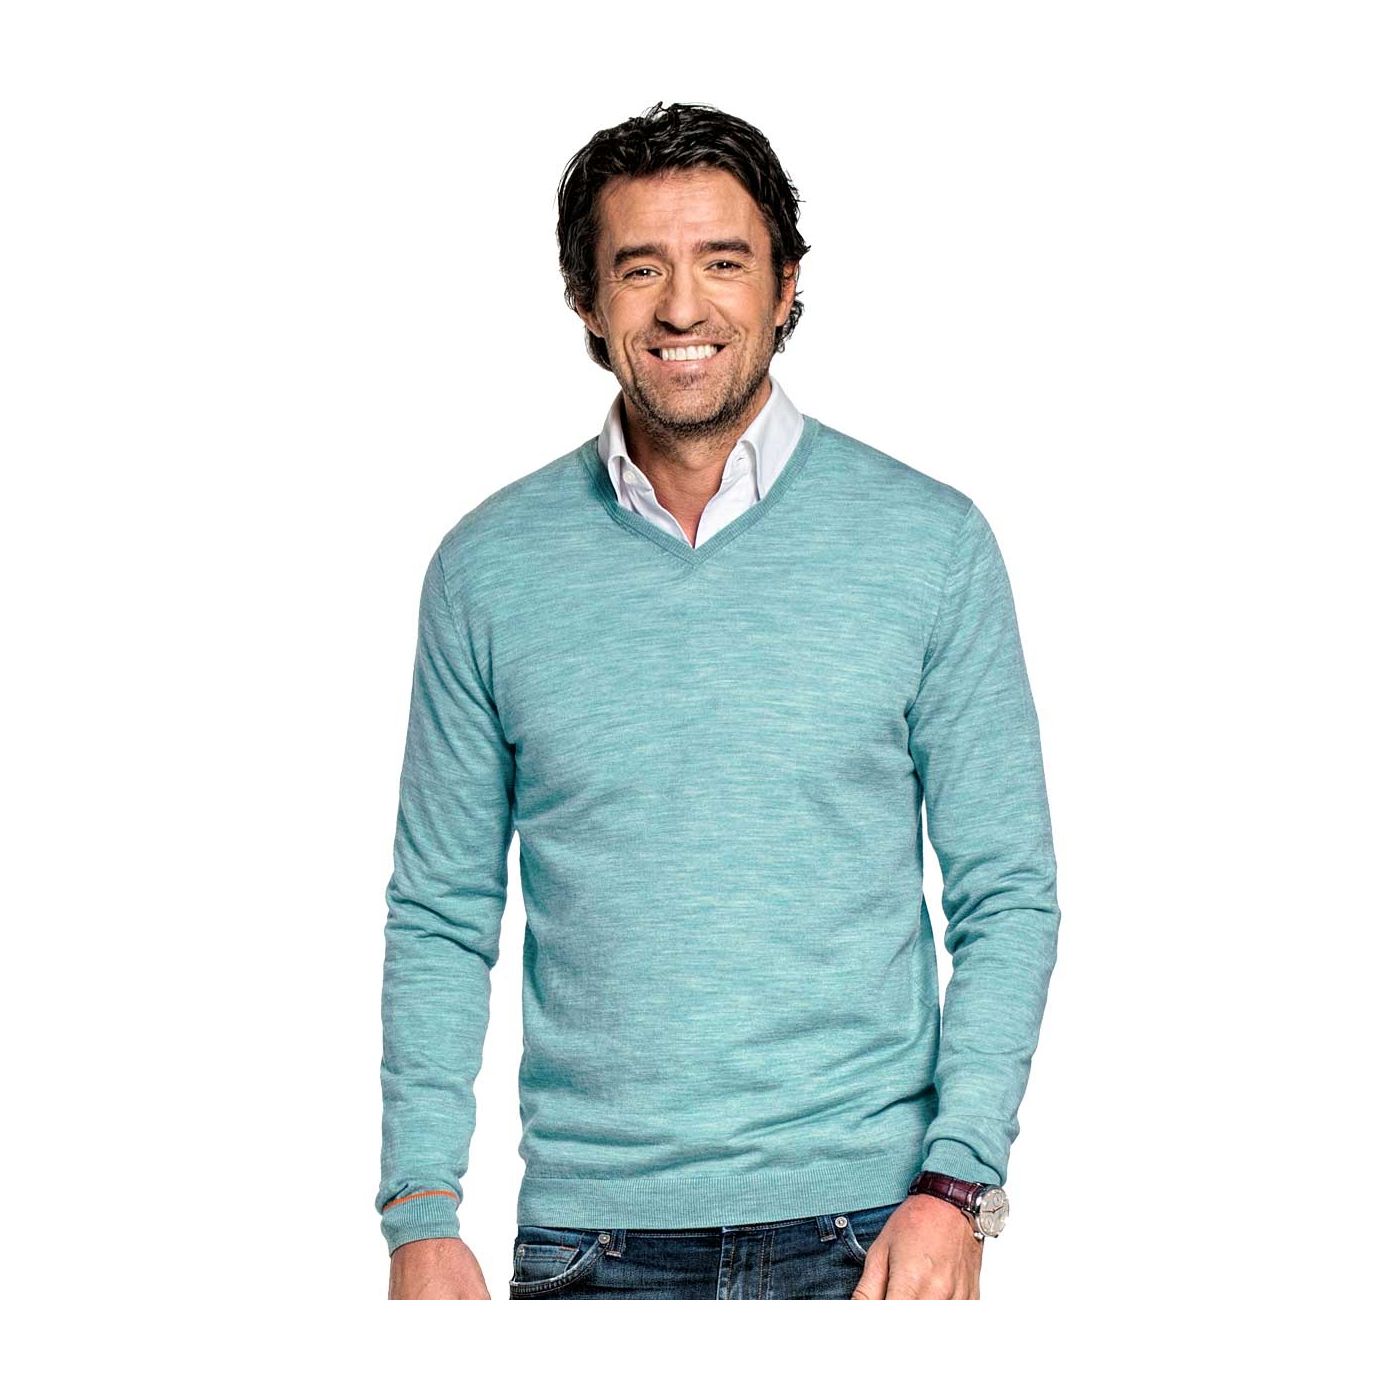 V-Neck sweater for men made of Merino wool in Light blue